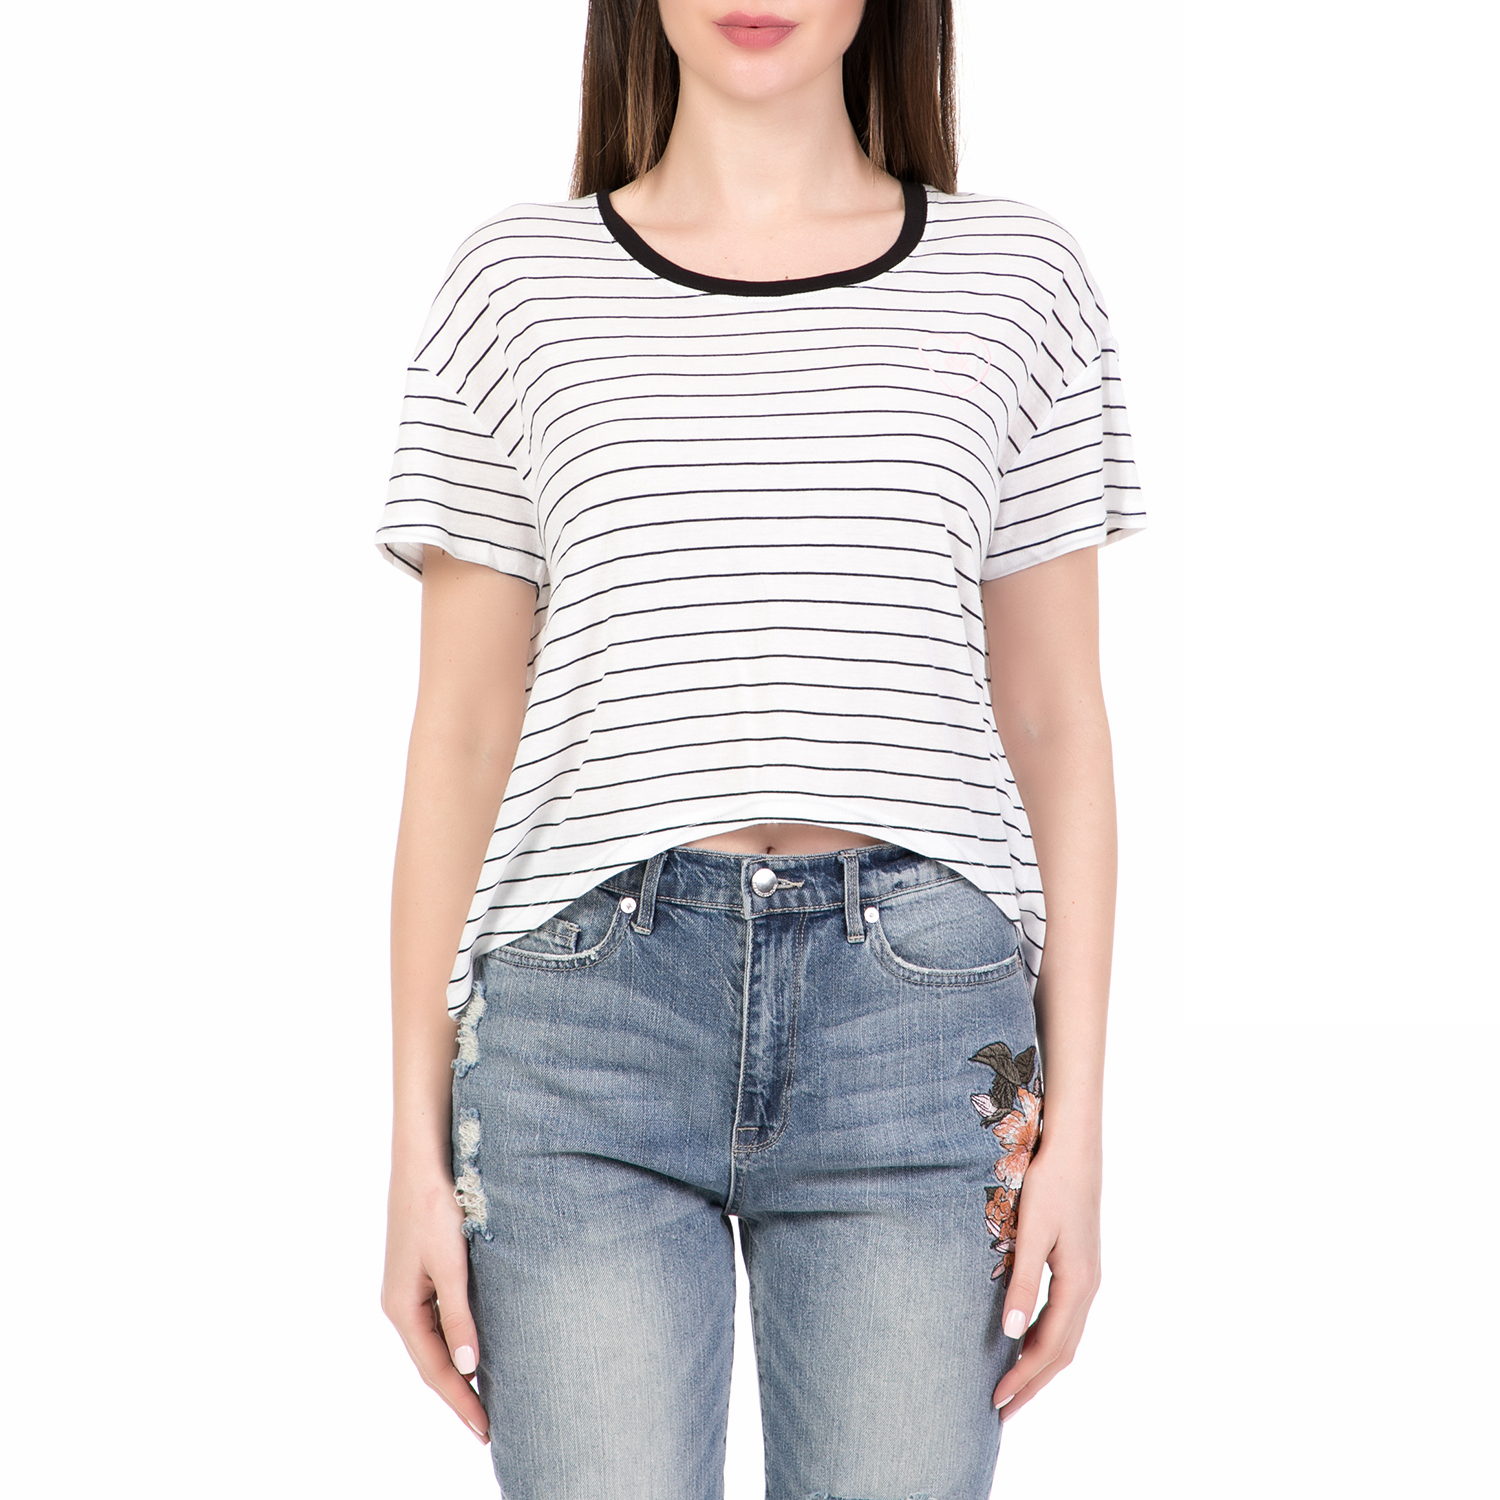 Γυναικεία/Ρούχα/Μπλούζες/Κοντομάνικες JUICY COUTURE - Γυναικεία κοντομάνικη μπλούζα SLIM STRIPE JUICY COUTURE λευκή-μαύρη